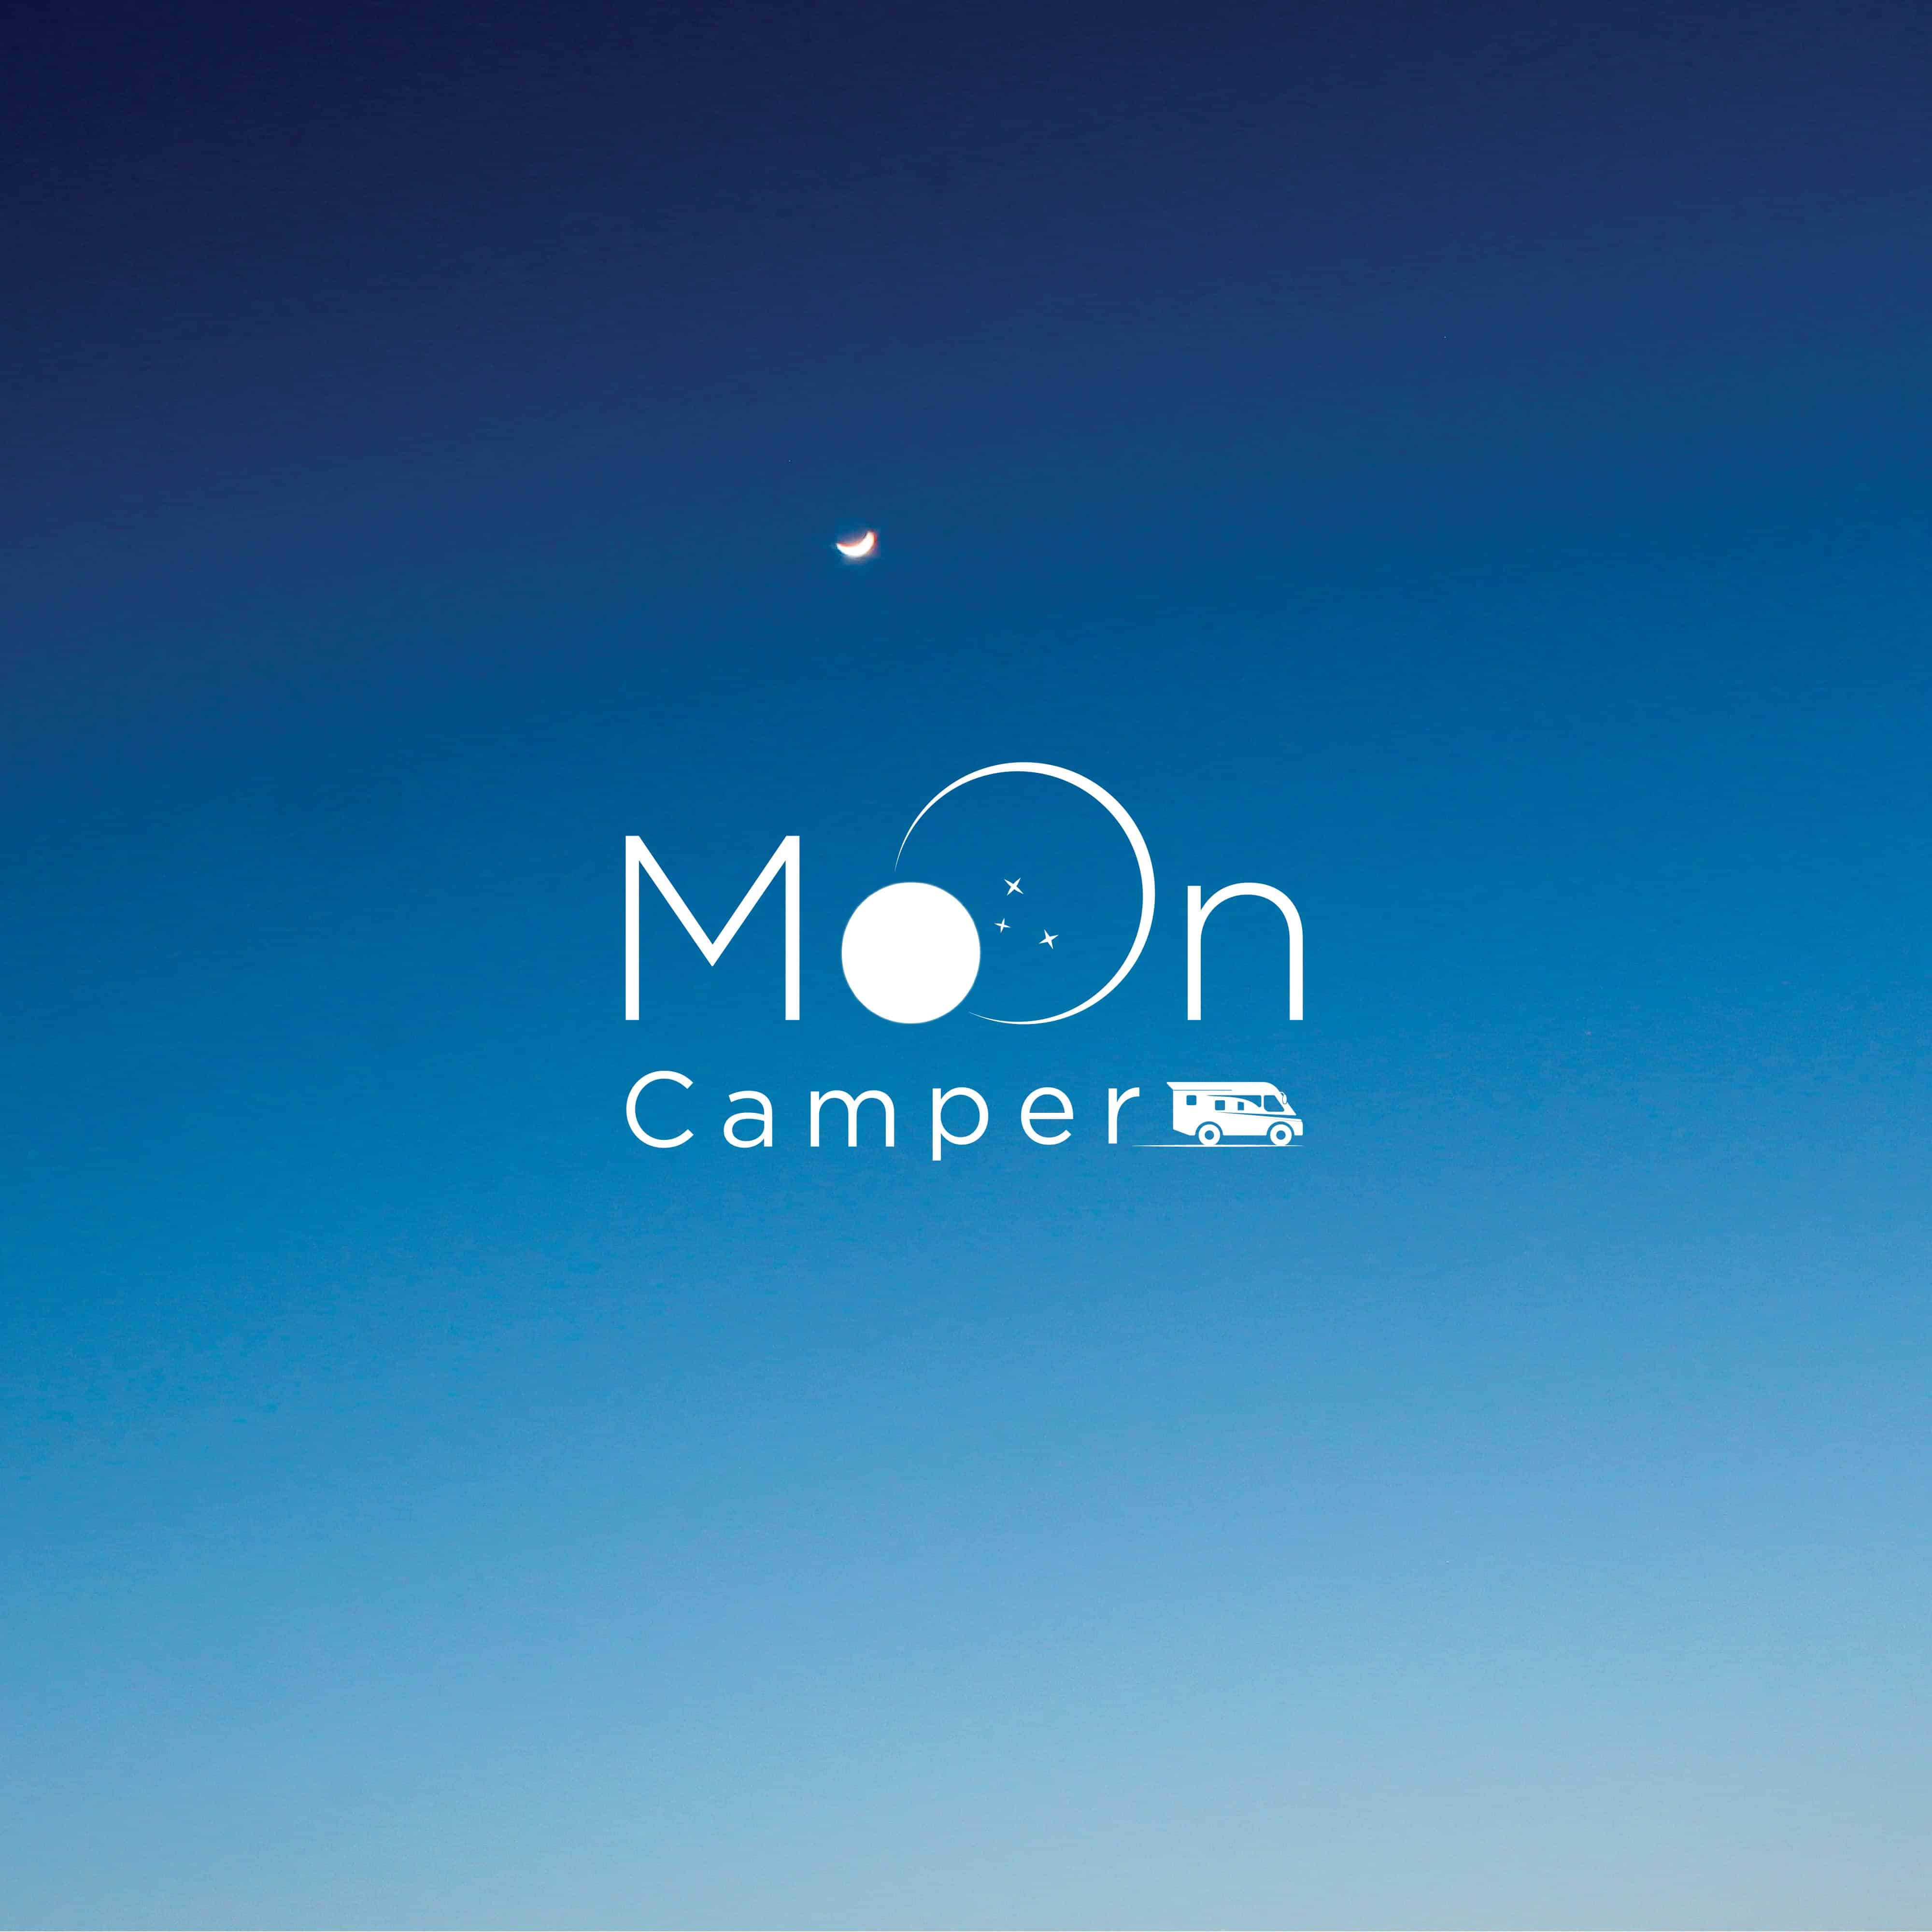 (c) Moon-camper.de